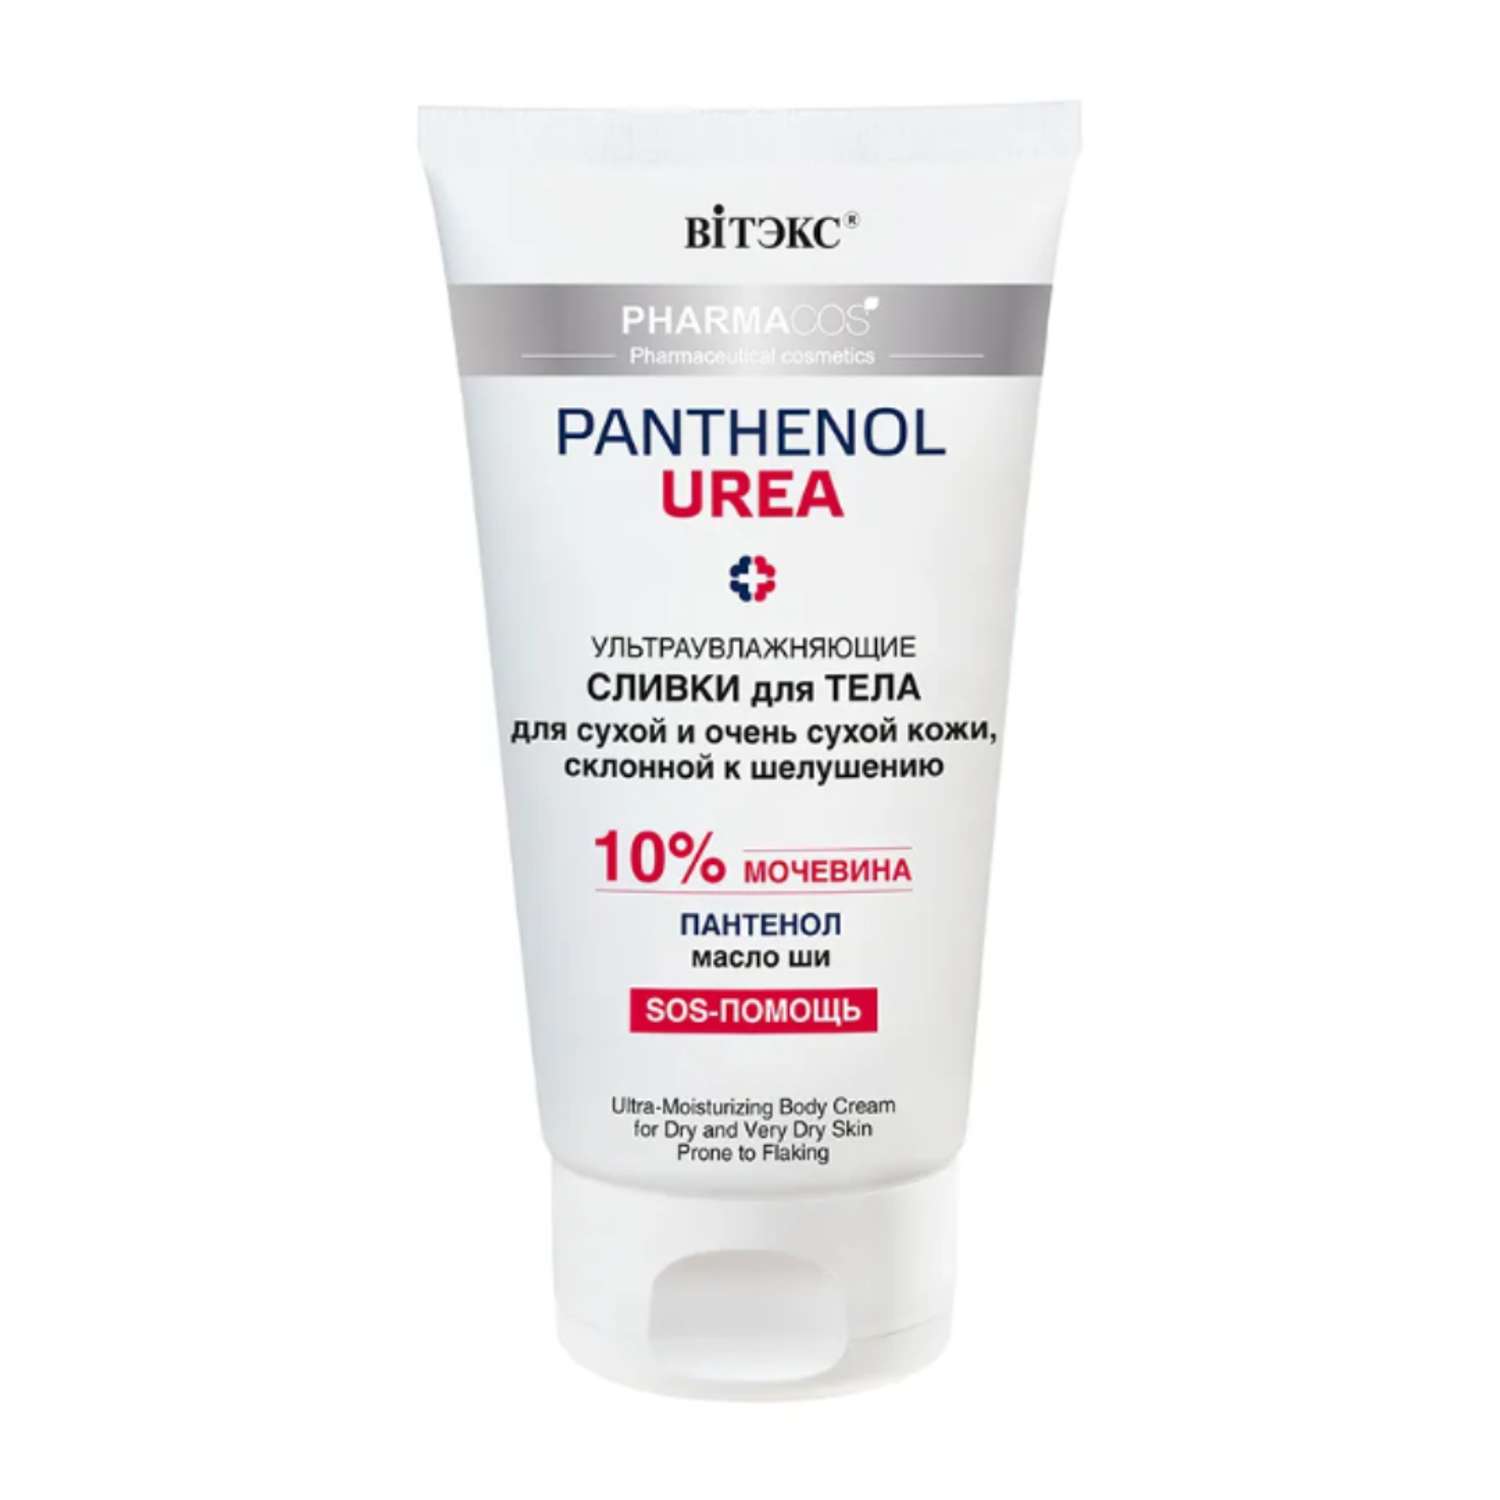 Сливки для тела ВИТЭКС pharmacos panthenol urea увлажняющие для сухой и склонной к шелушениям 10% мочевины 150мл - фото 1